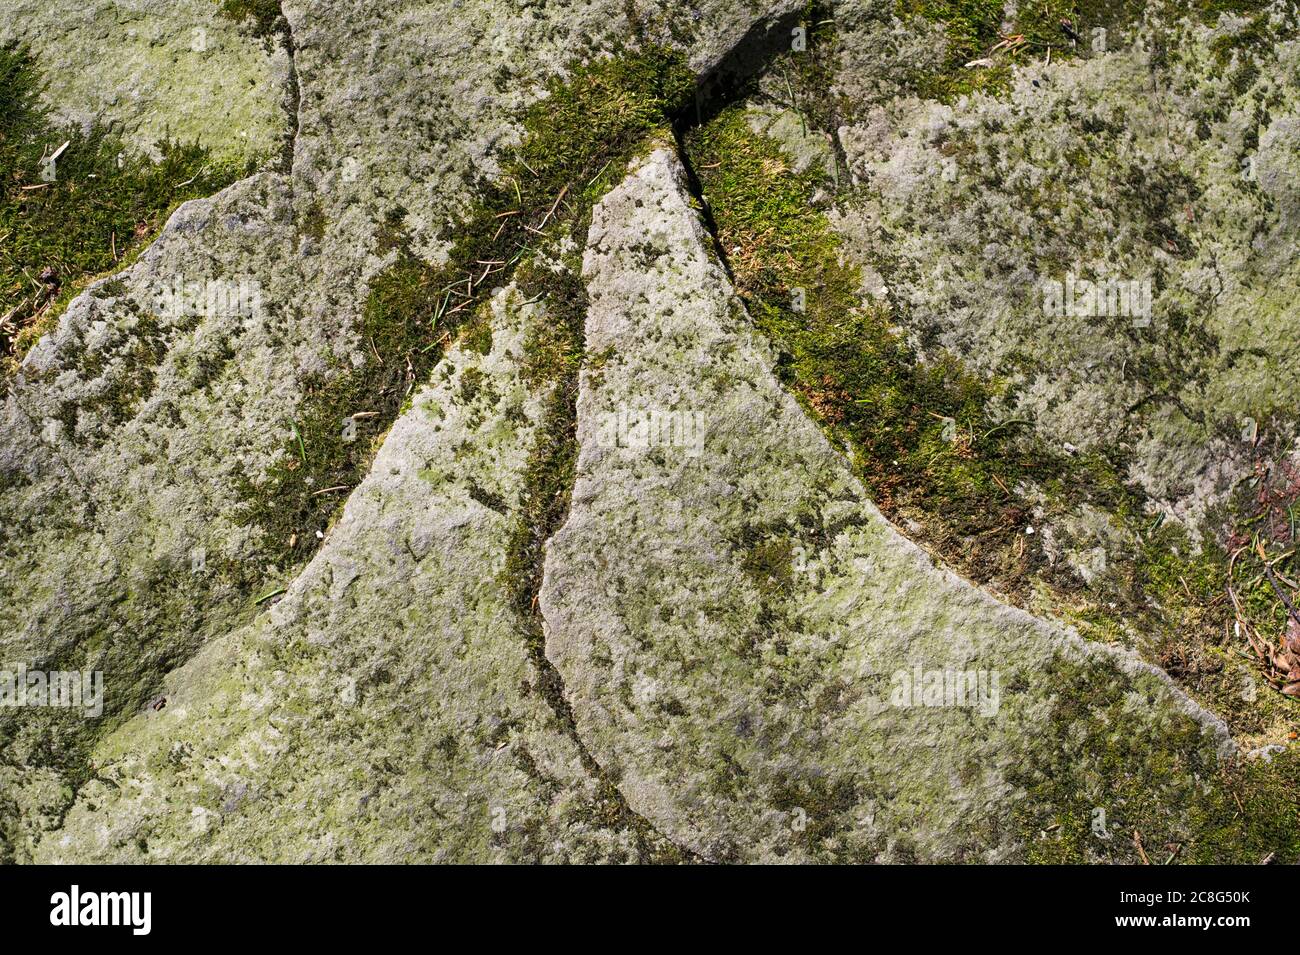 Natürliches Detail - Moos wächst auf dem Stein. Grüne Pflanze bedeckt die felsige Oberfläche Stockfoto